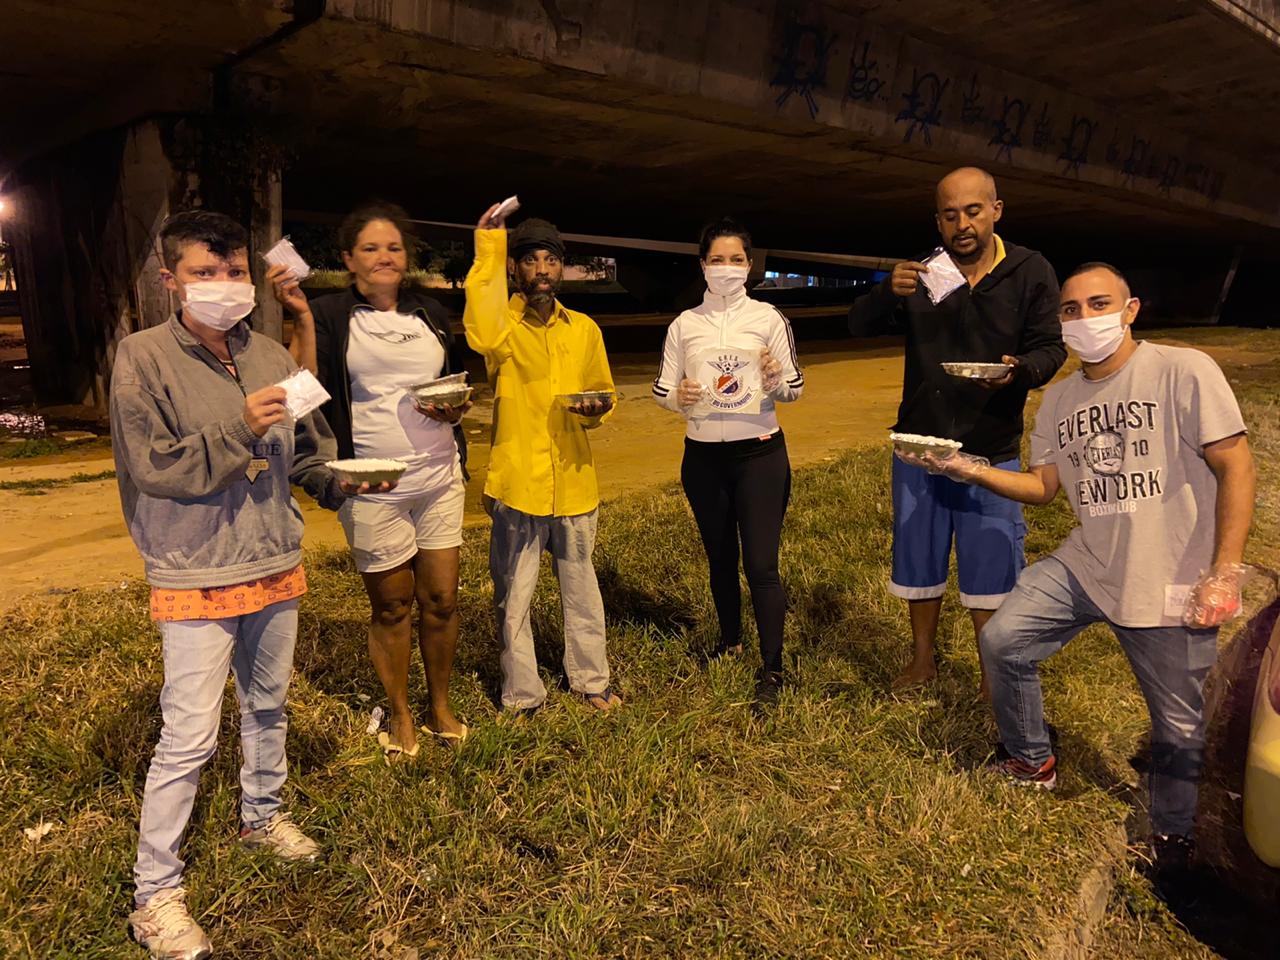 A primeira ação do projeto levou às pessoas que vivem nas ruas do Galeão e Portuguesa, refeições reforçadas e máscaras de proteção